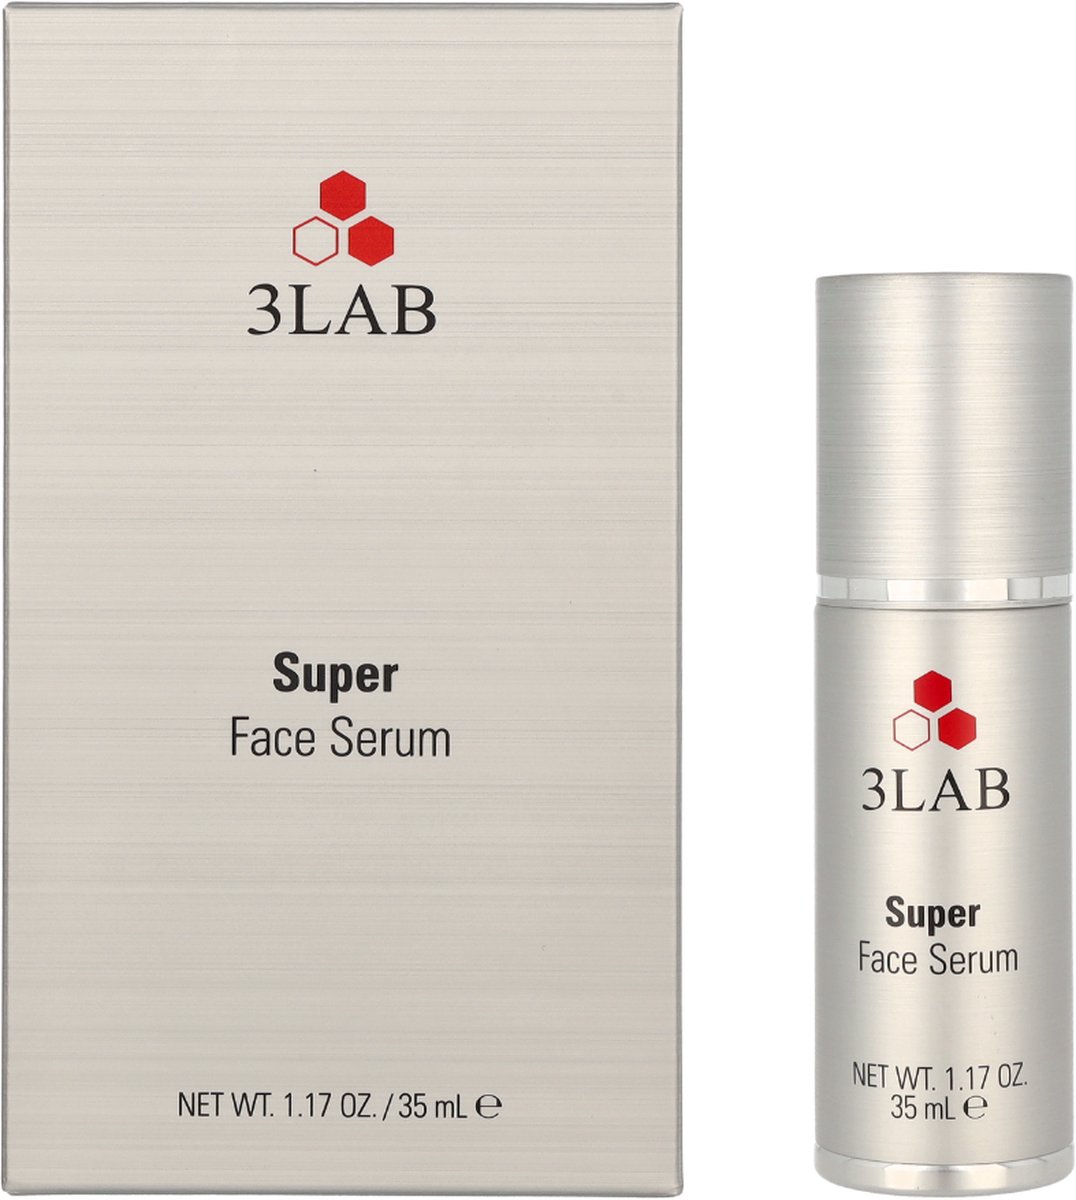 3LAB Super Face Serum